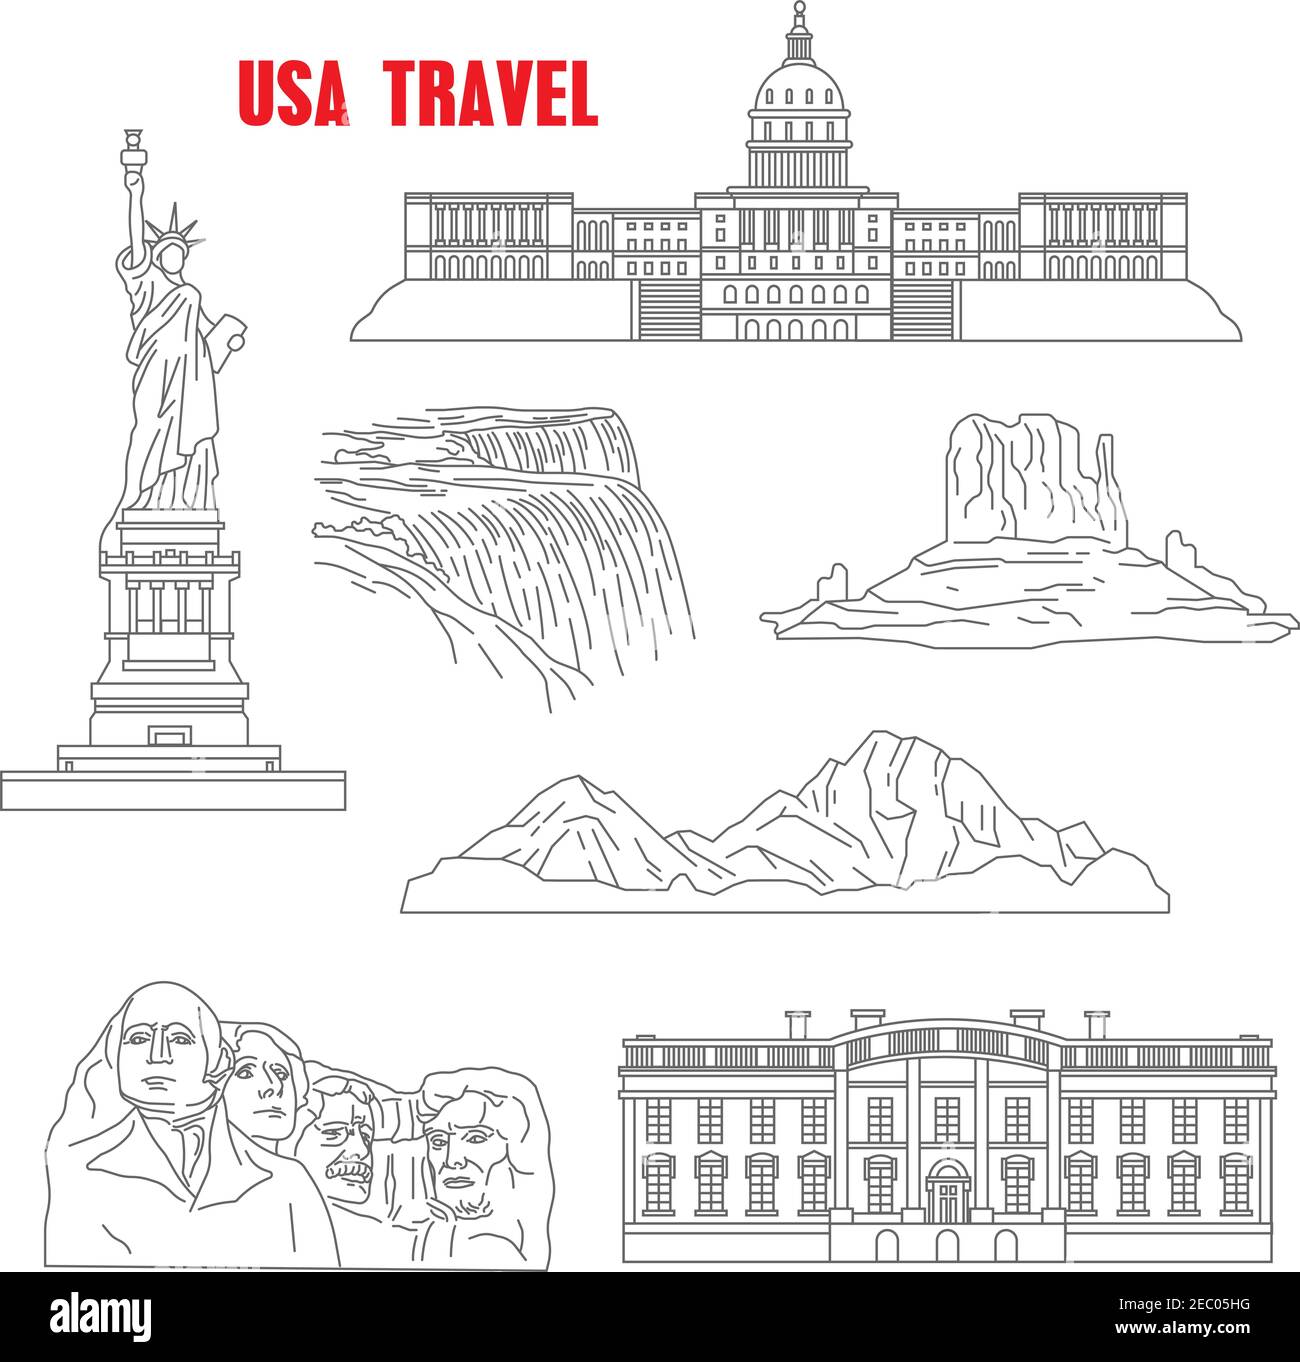 Berühmte Wahrzeichen der USA für Reise-Design mit dünnen Linien Ikonen des Mount Rushmore National Memorial, die Freiheitsstatue, Grand Canyon, Capitol, Pfingsten Stock Vektor